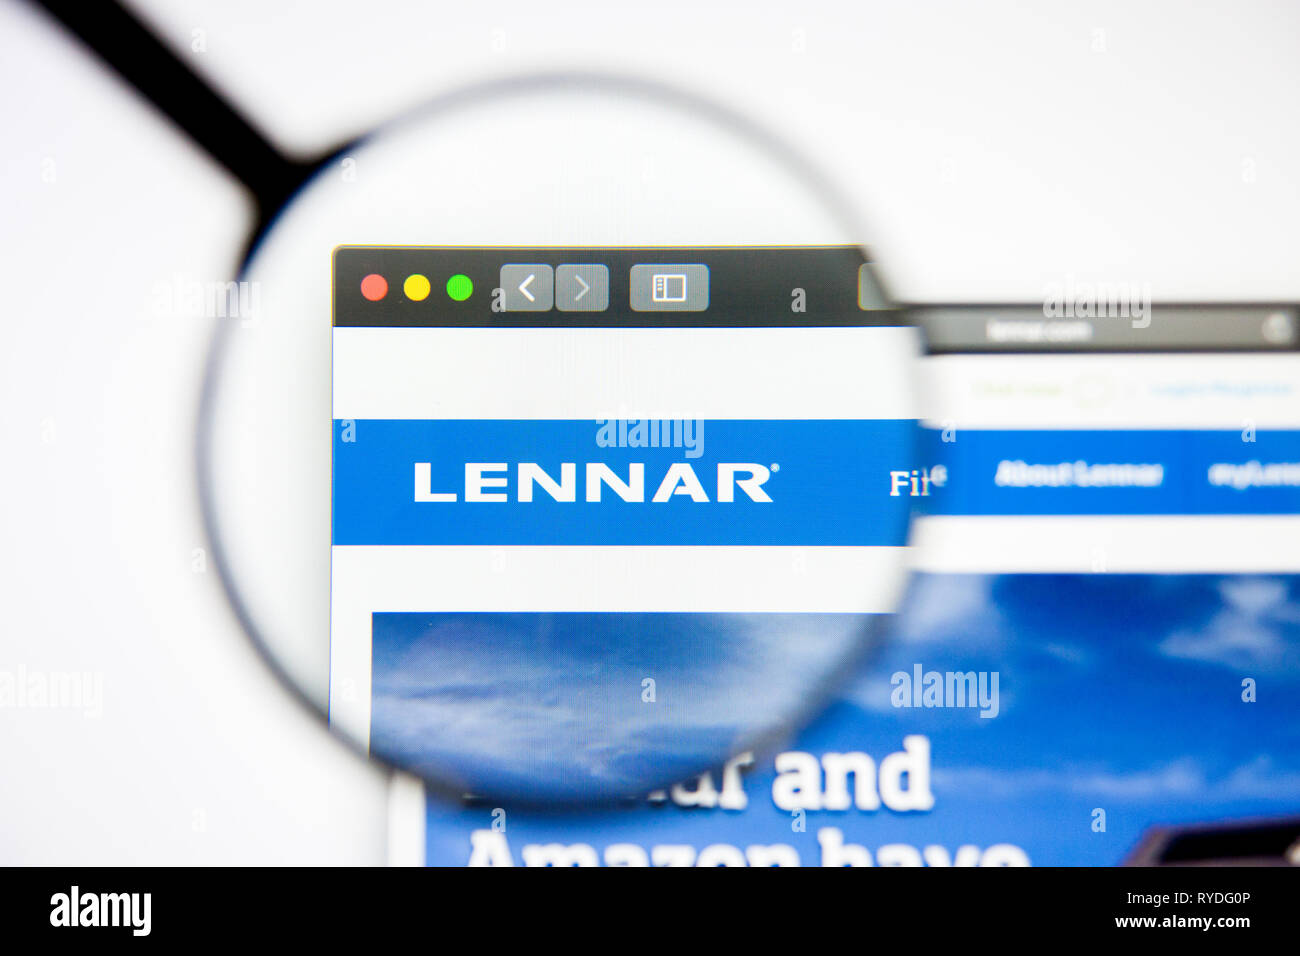 Los Angeles, Californie, USA - 5 mars 2019 - Lennar accueil du site. Logo Lennar visible sur l'écran d'affichage, de rédaction d'illustration Banque D'Images